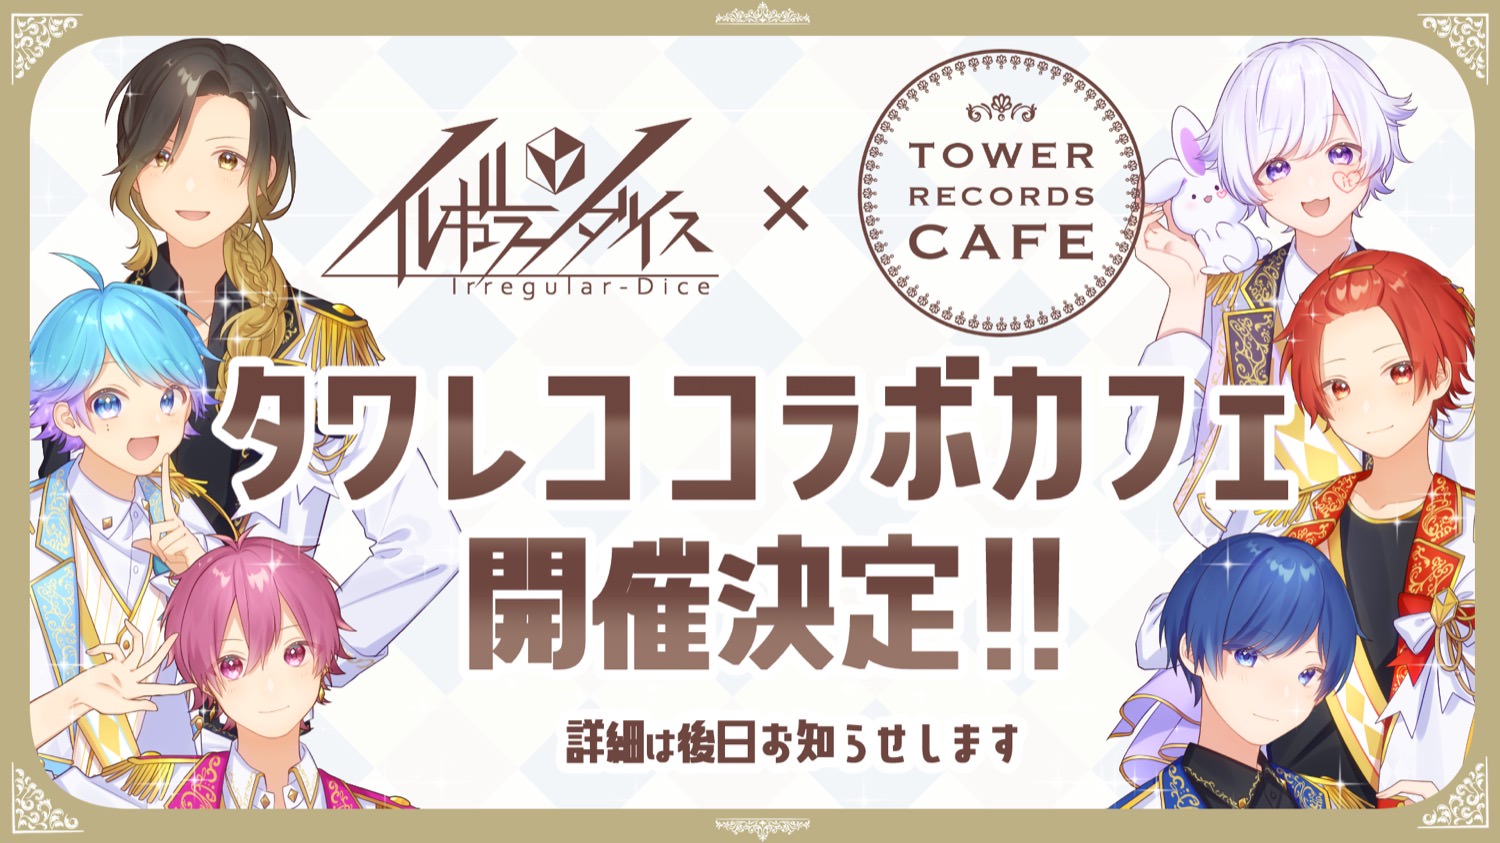 いれいす × タワーレコードカフェ 初のタワレココラボカフェ開催決定!